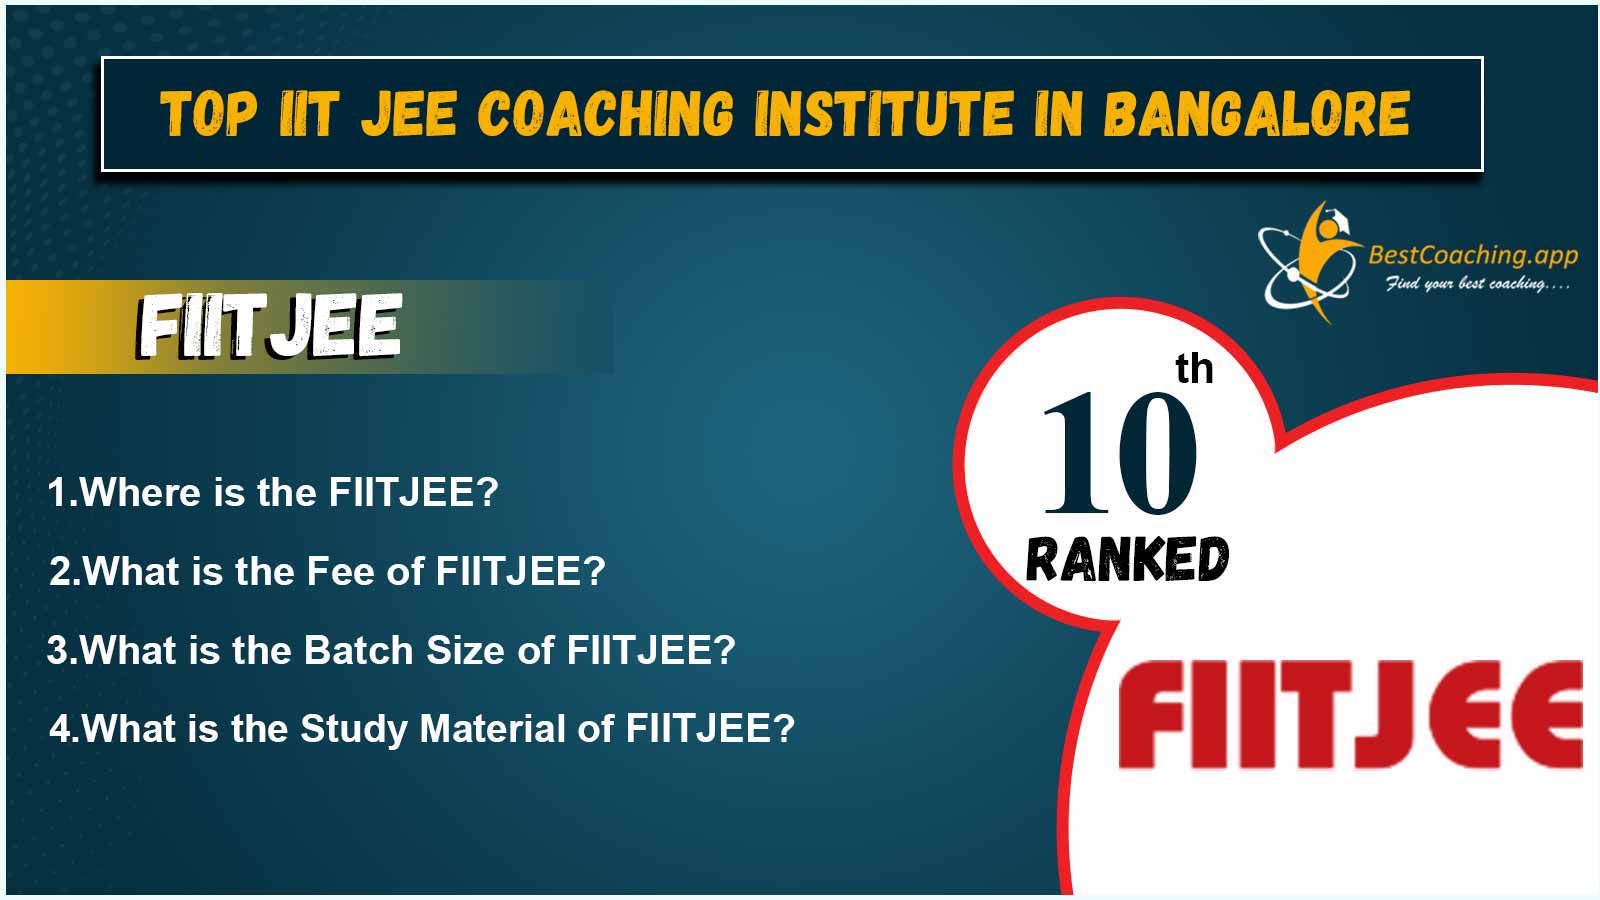 IIT JEE Coaching of Bangalore